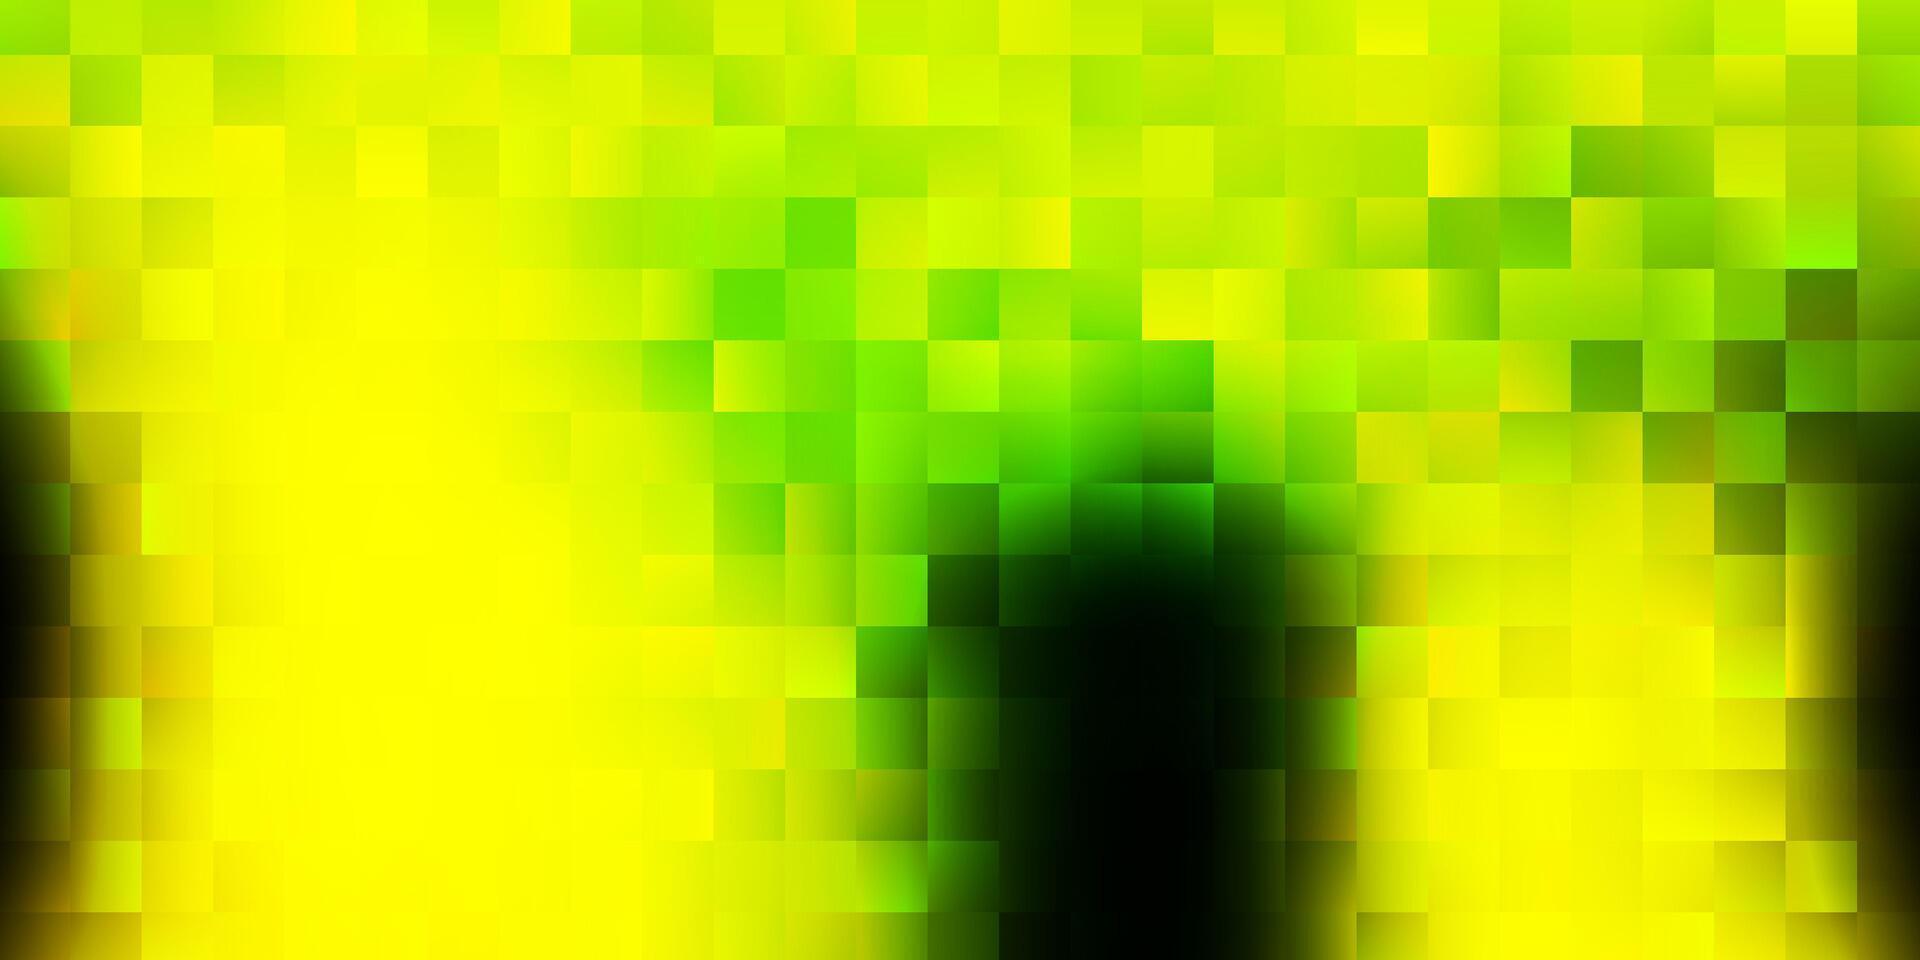 hellgrüne, gelbe Vektorschablone mit Rechtecken. vektor